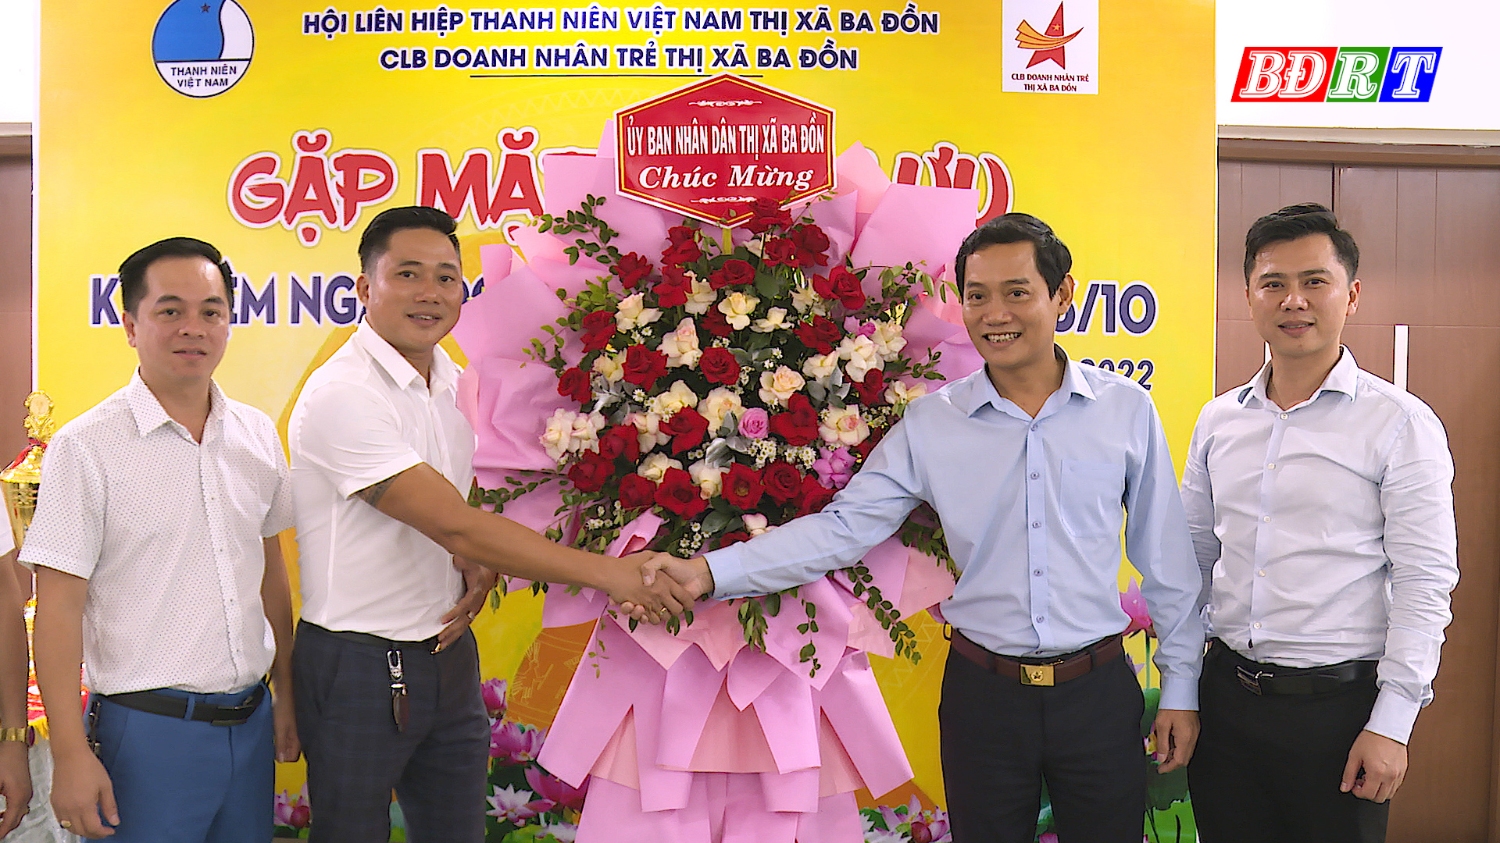 Lãnh đạo thị xã Ba Đồn tặng hoa chúc mừng CLB Doanh nhân trẻ thị xã Ba Đồn.